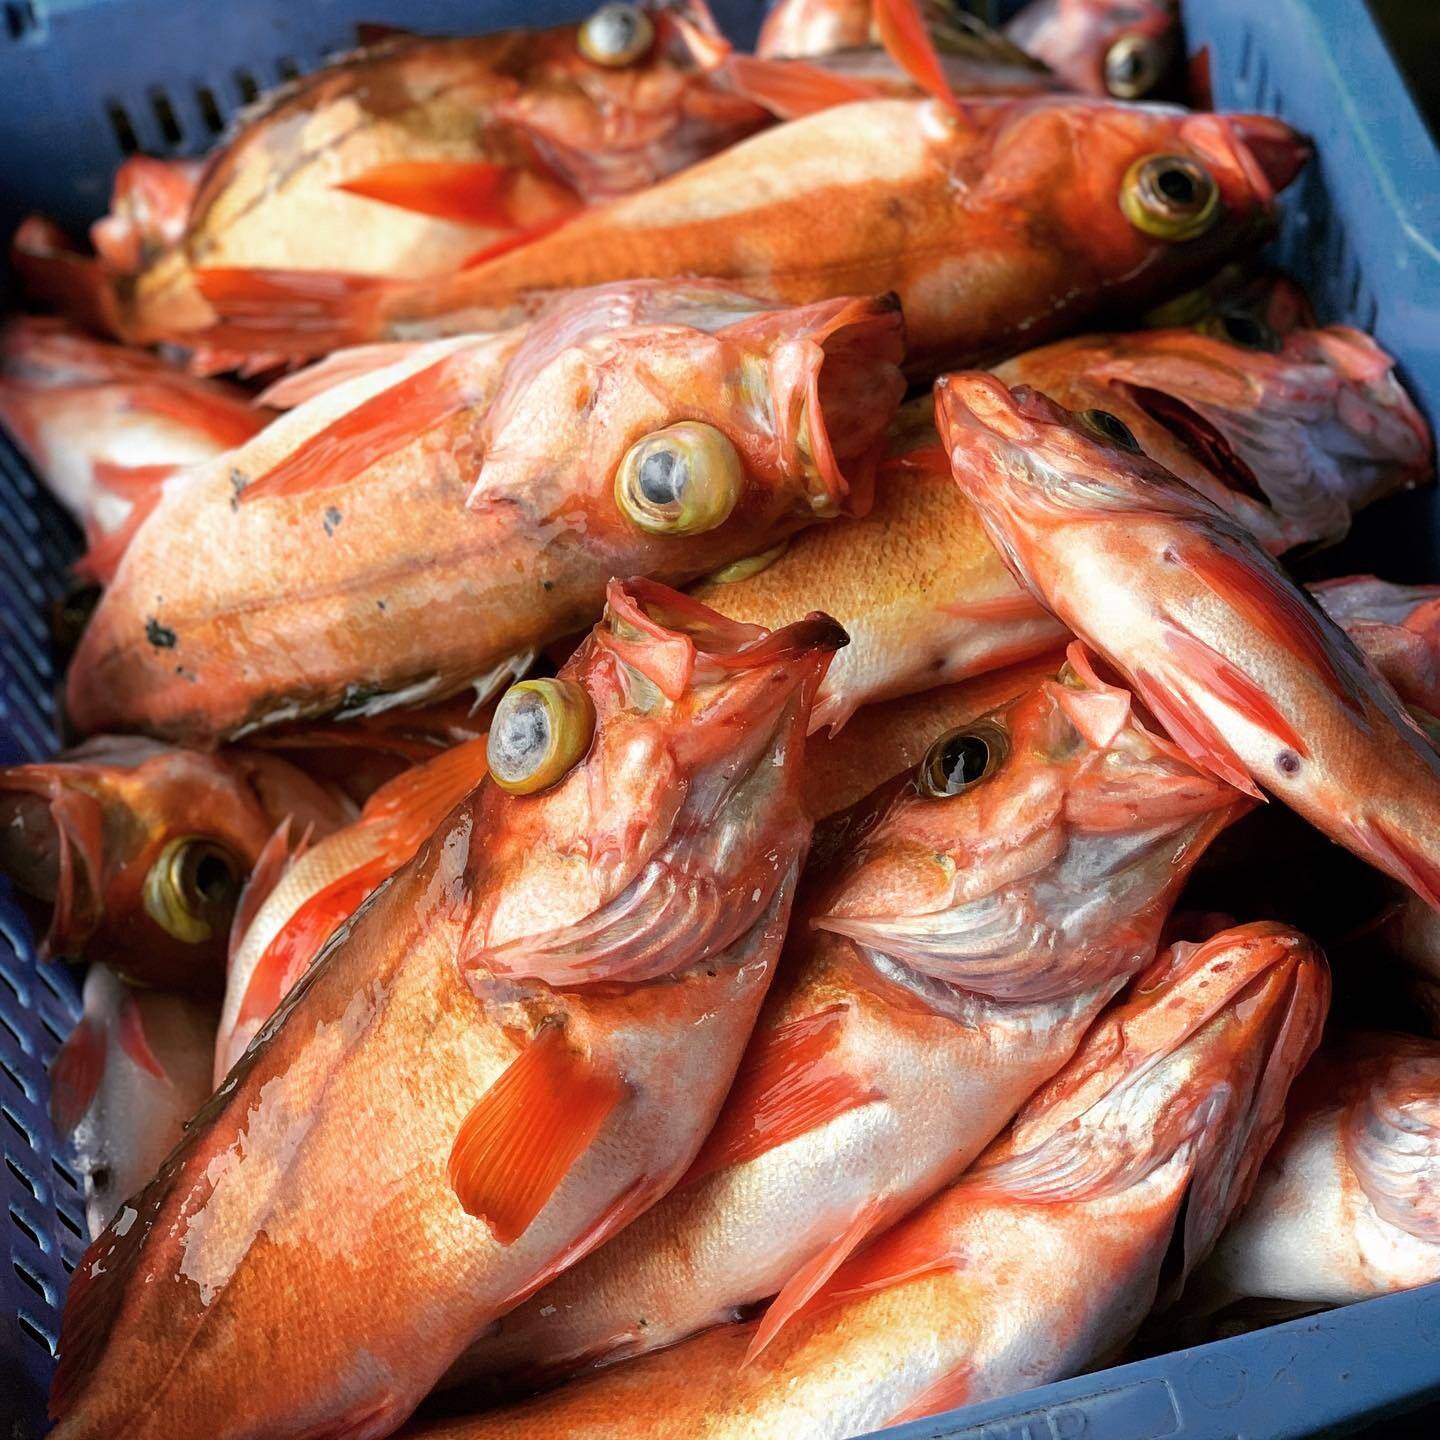 釣りたて ウスメバルbox 沖メバル 3キロ 高級魚 秋田県産の魚介類 食べチョク 産地直送 産直 お取り寄せ通販 農家 漁師から旬の食材を直送